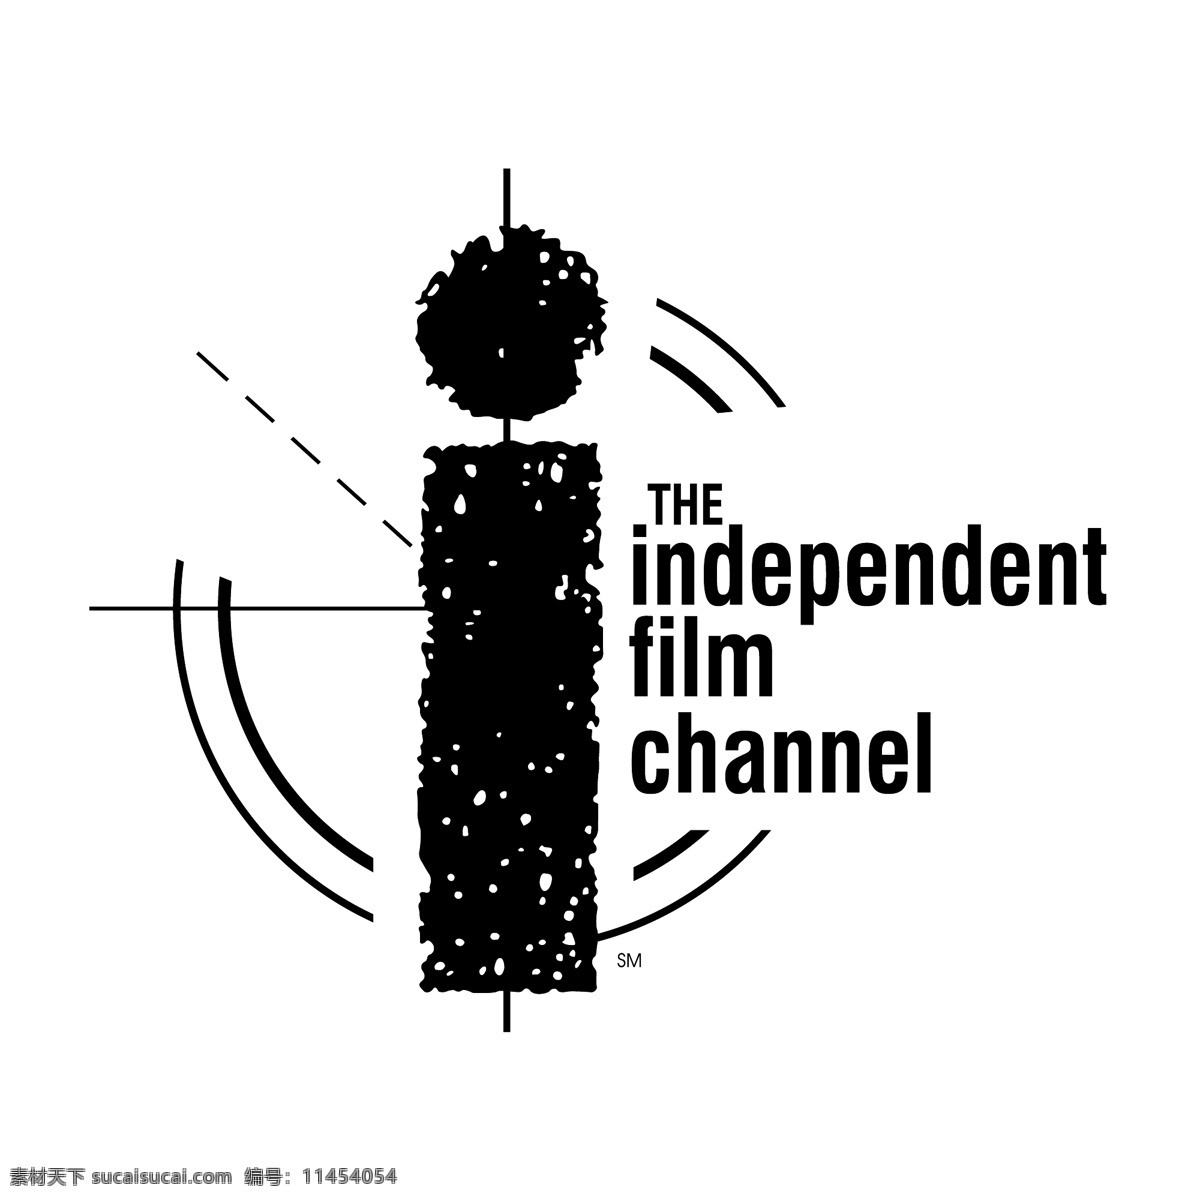 独立 电影频道 电影 频道 自由 独立电影 独立电影频道 矢量 标识 向量 电影频道标识 图形 艺术 载体 建筑家居